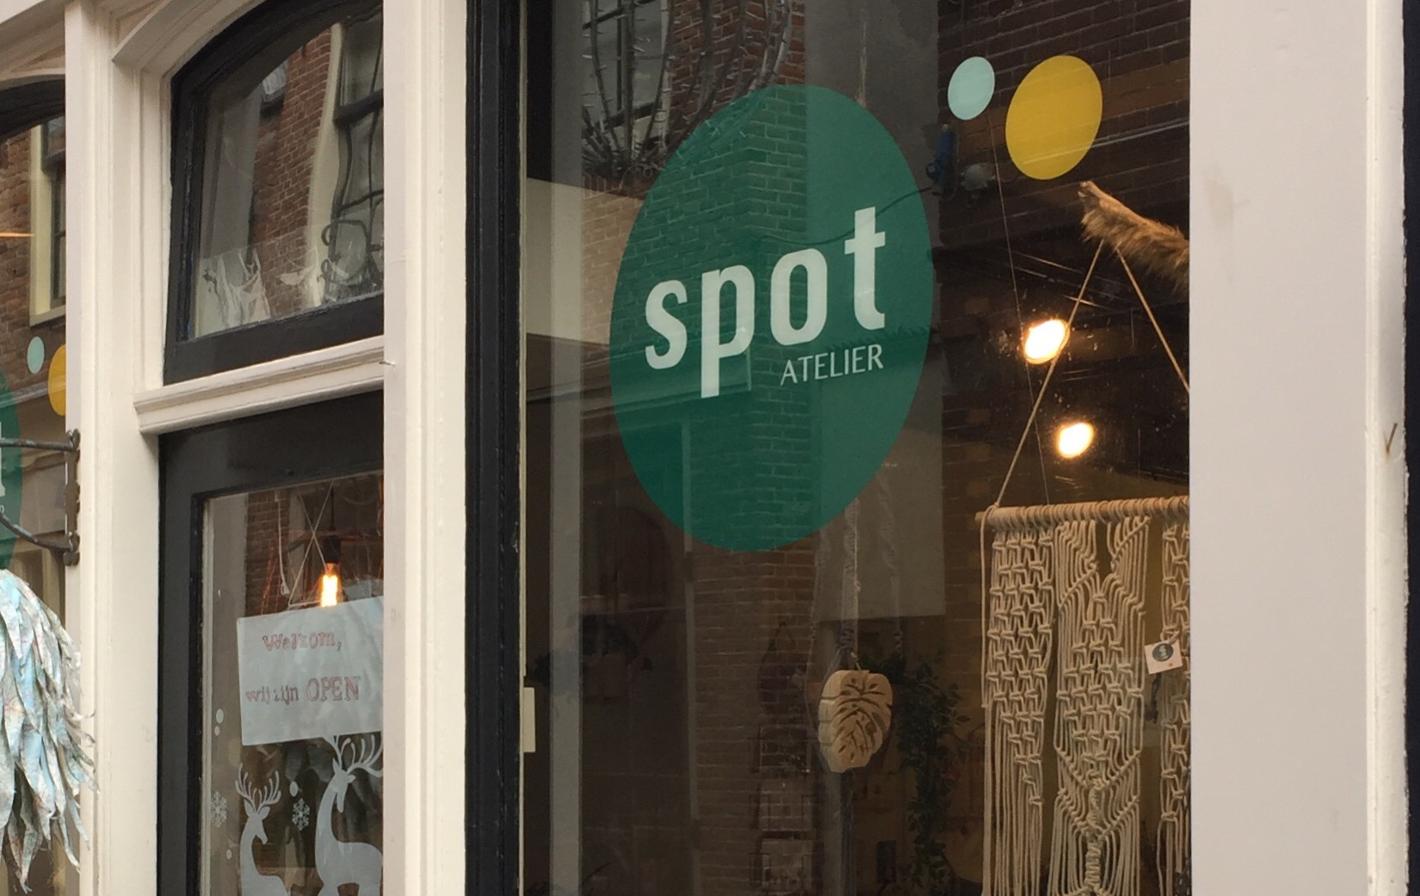 Foto Spot Atelier in Alkmaar, Winkelen, Geschenken kopen, Woonaccessoires wonen - #1